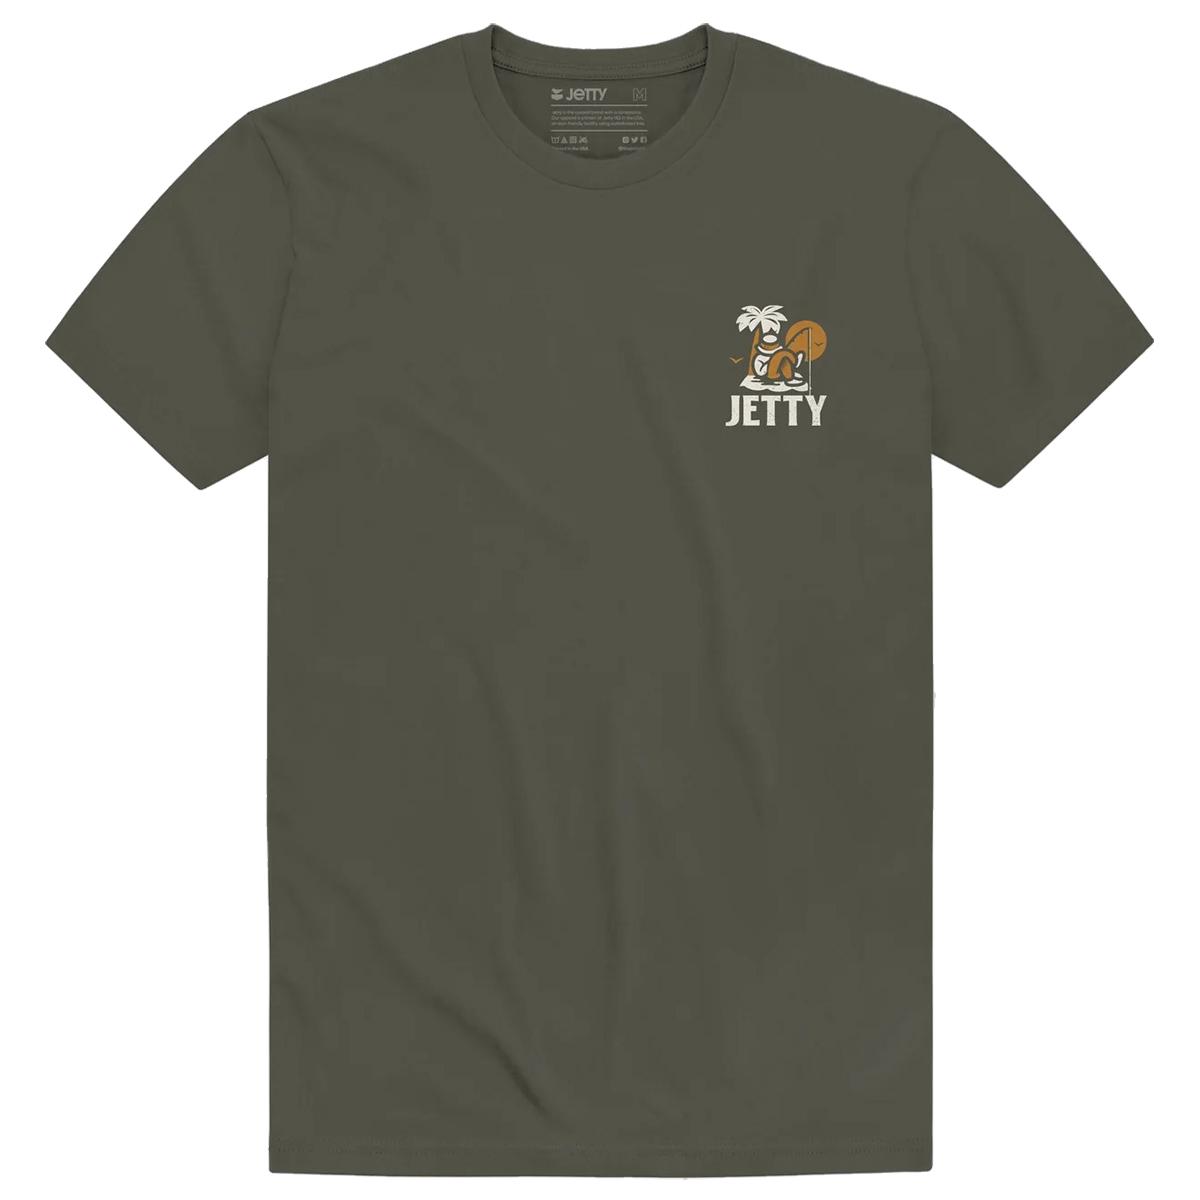 Jetty Stranded T-Shirt - Men's